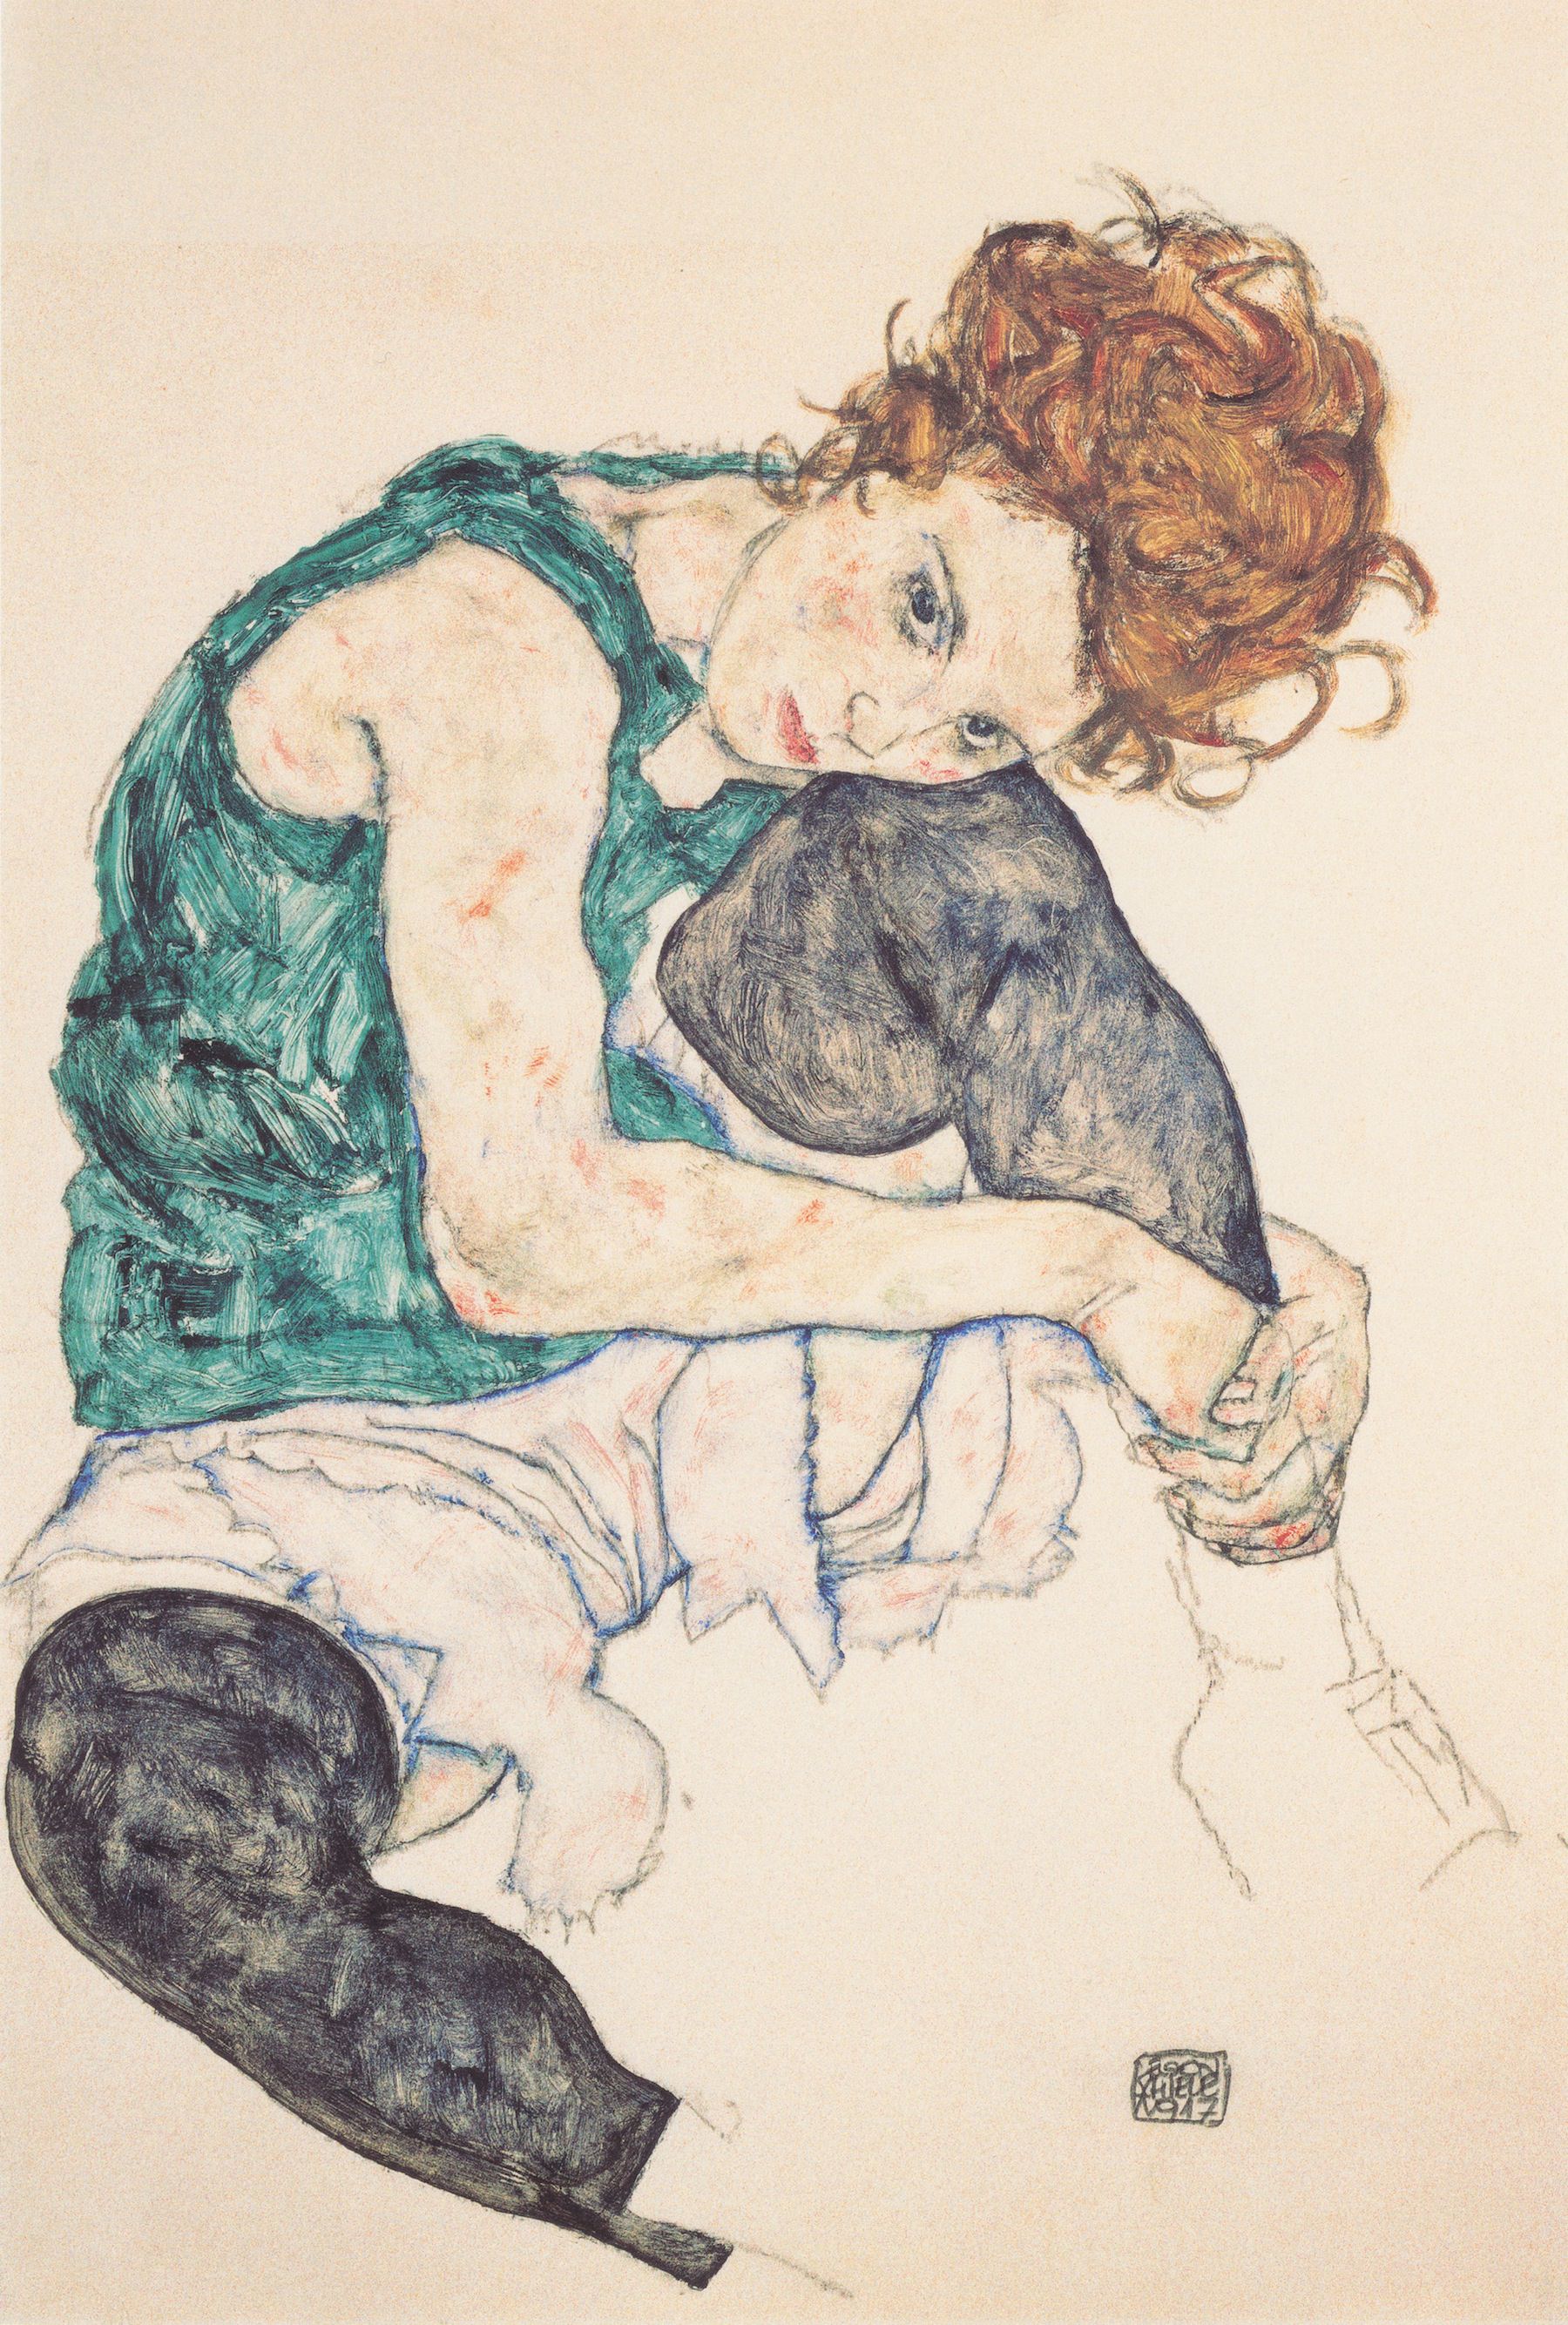 Femeie așezată cu picioarele trase în sus by Egon Schiele - 1917 - - 